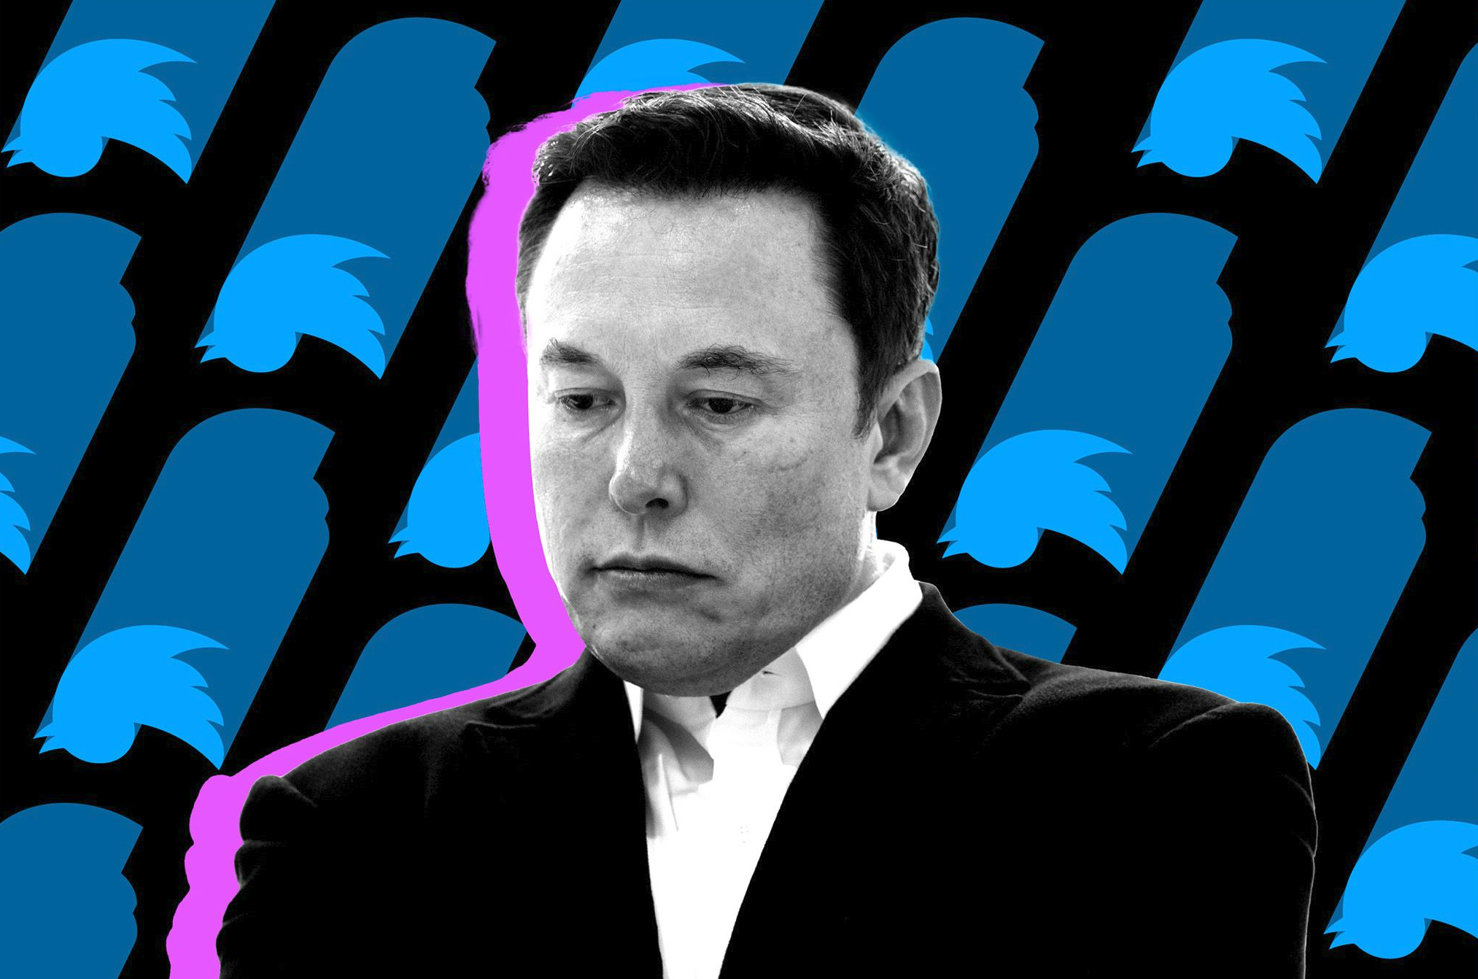 Elon Musk, arroganza a perdere: -200 miliardi in un anno, e chi non lo ama cinguetta